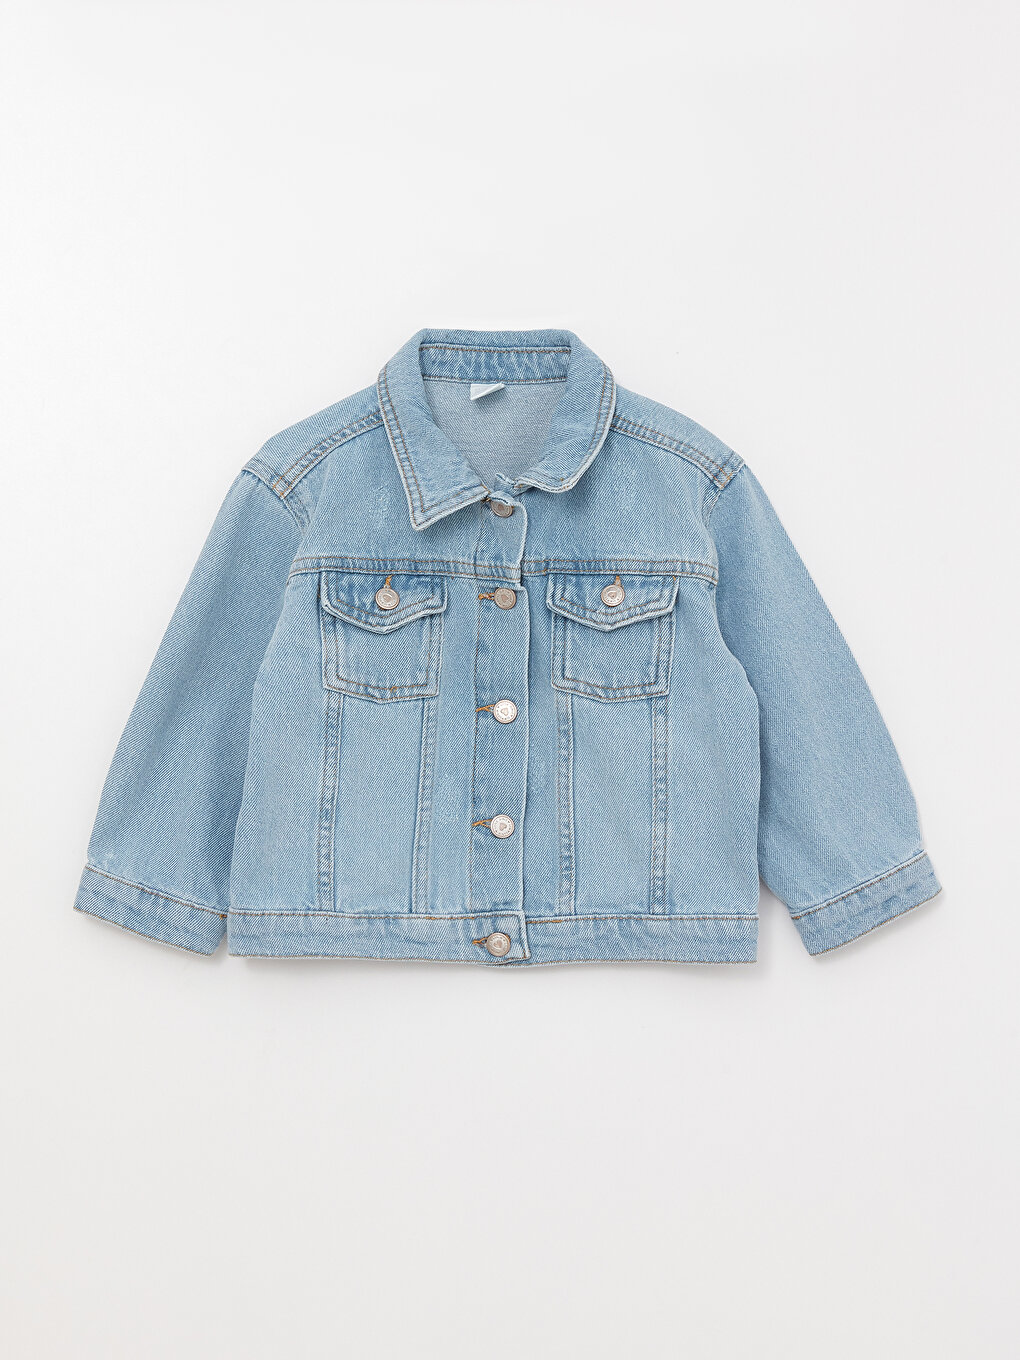 Girls Jean Jacket | Jean jacket for girls, Kids jeans jacket, Girls jeans-seedfund.vn